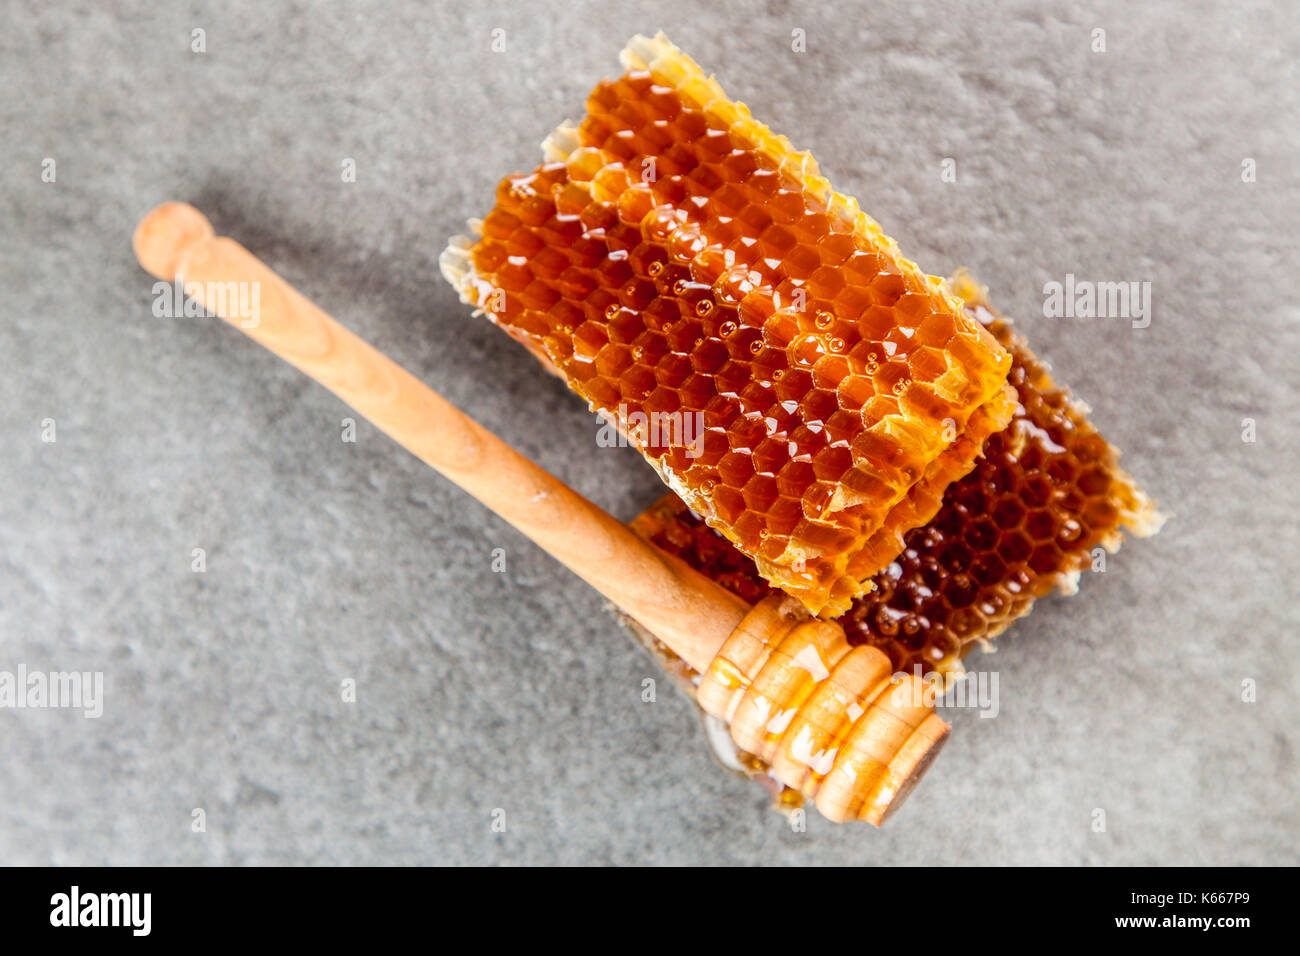 Honeycomb on grey background Stock Photo